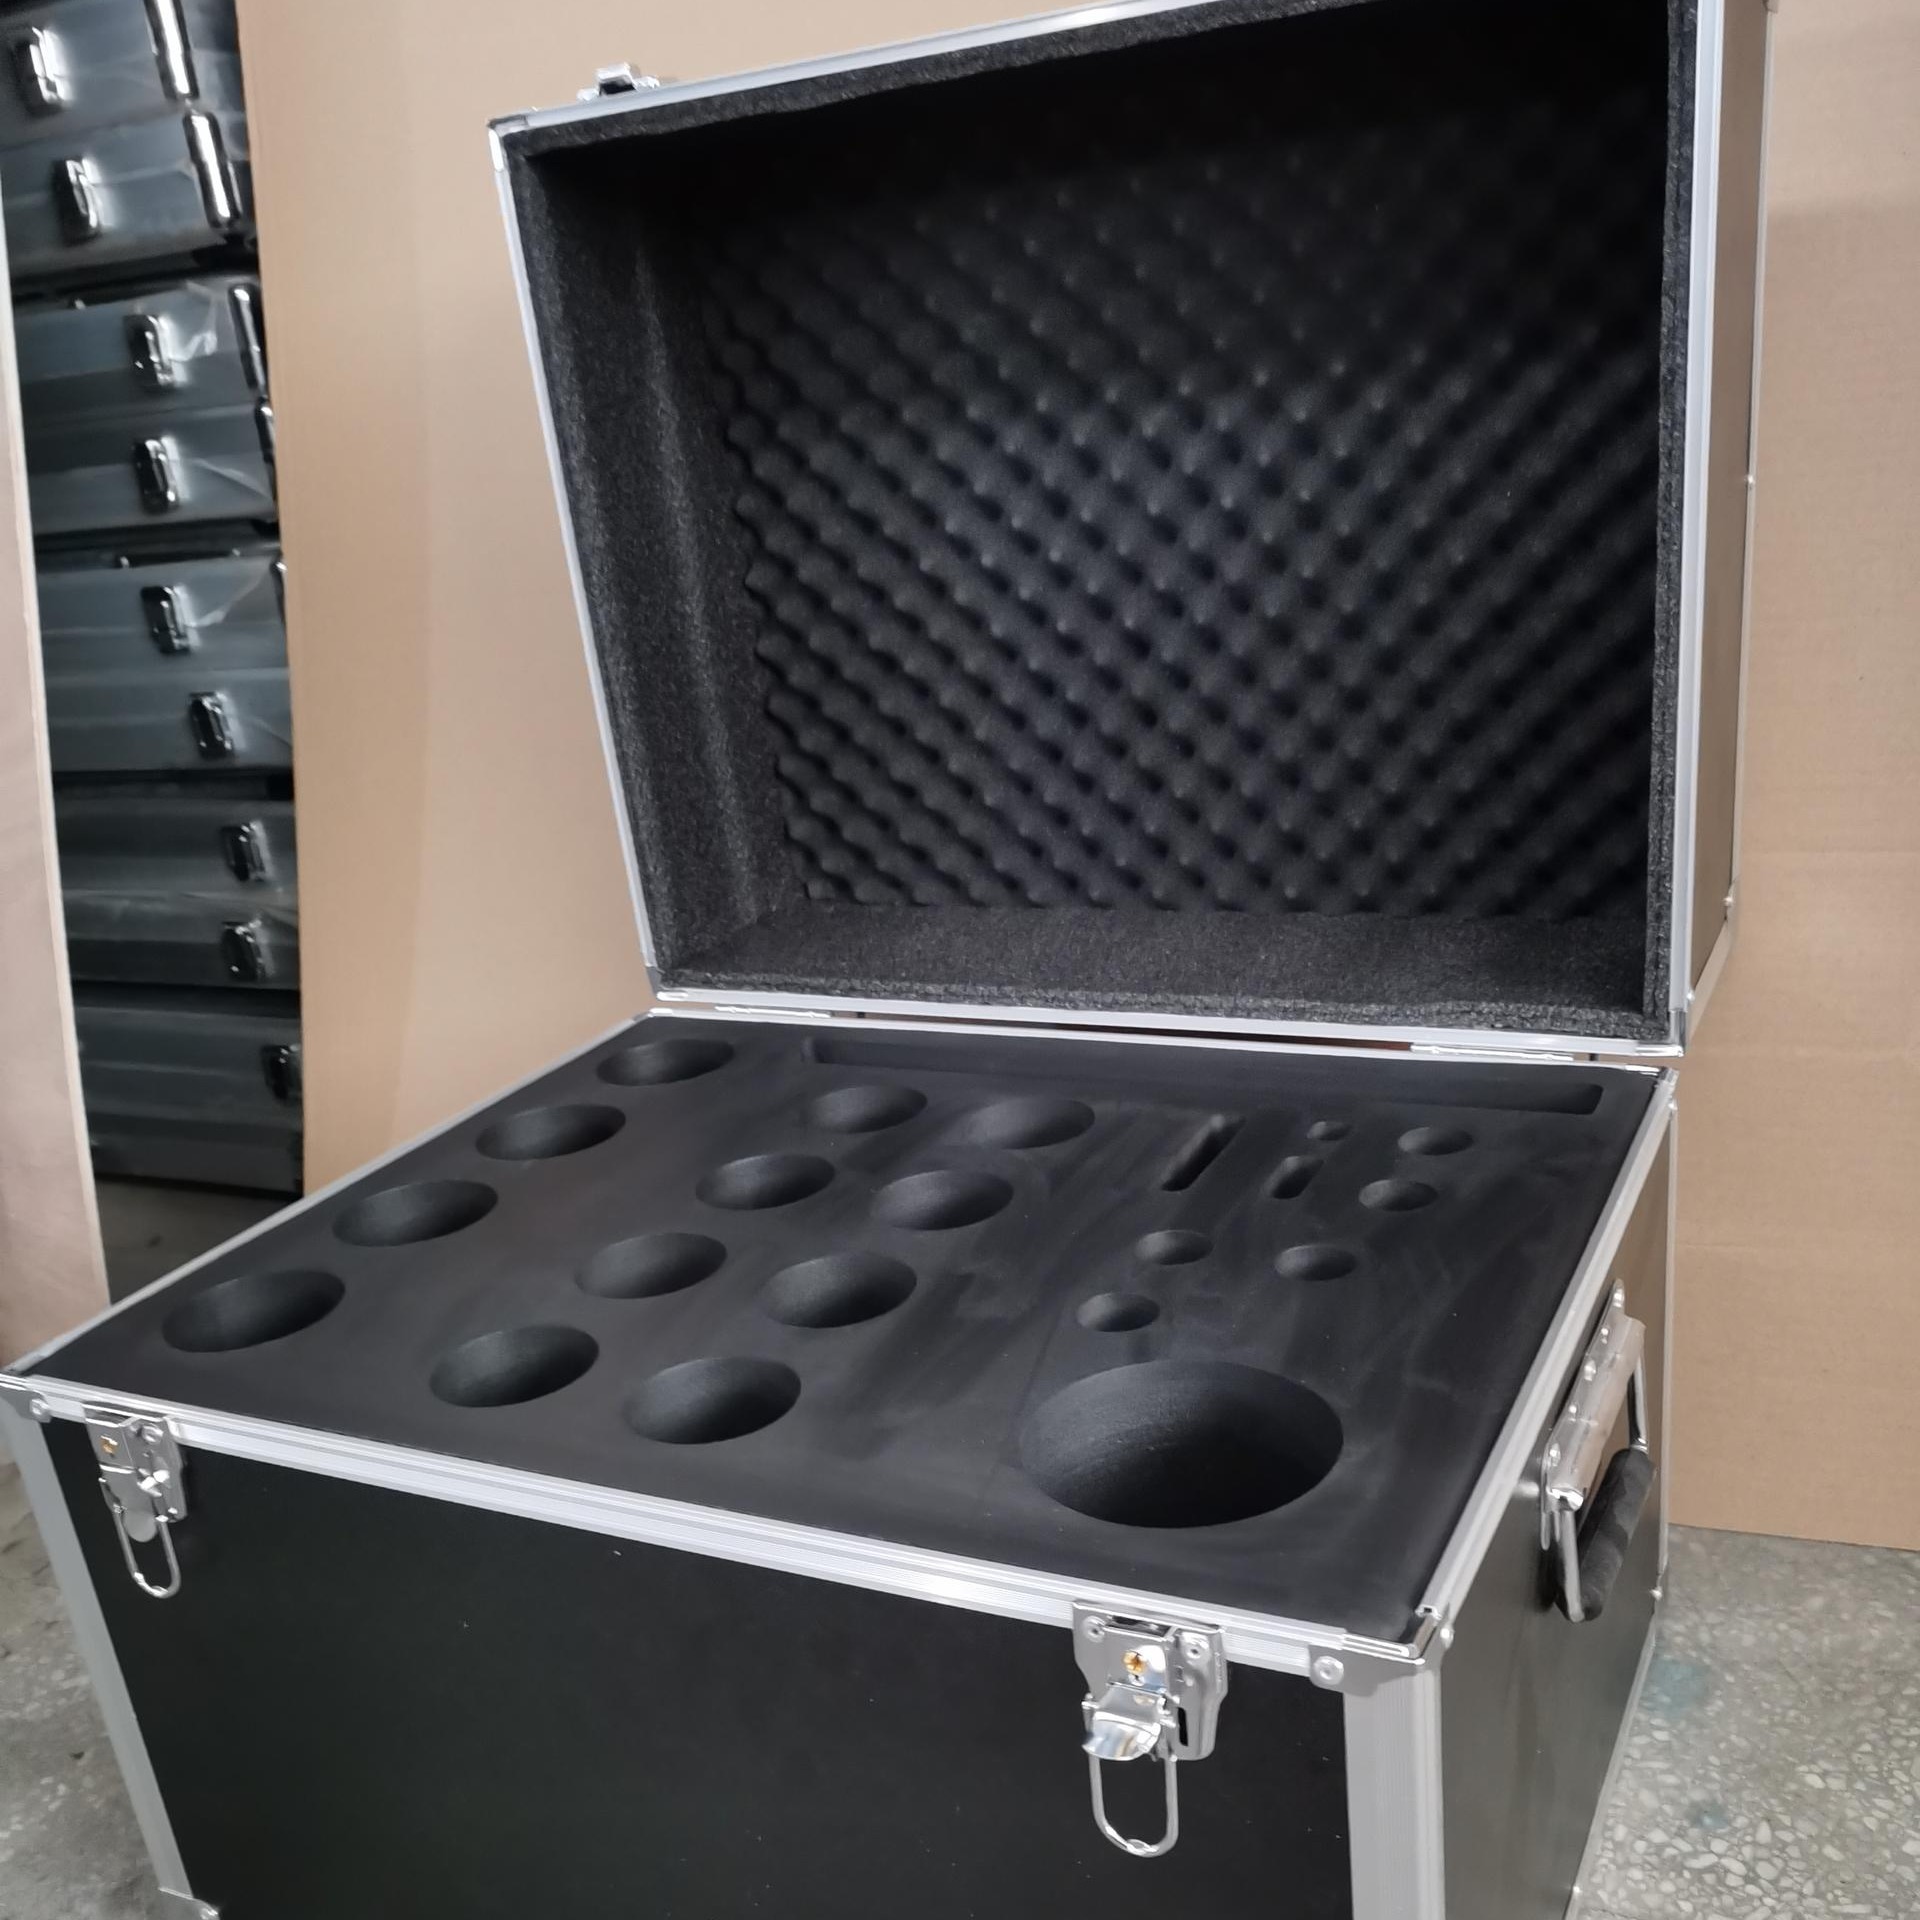 成都电子仪器箱制作 工具箱加工 成都定做铝箱 定制仪器箱 20寸拉杆箱咨询汇思创新